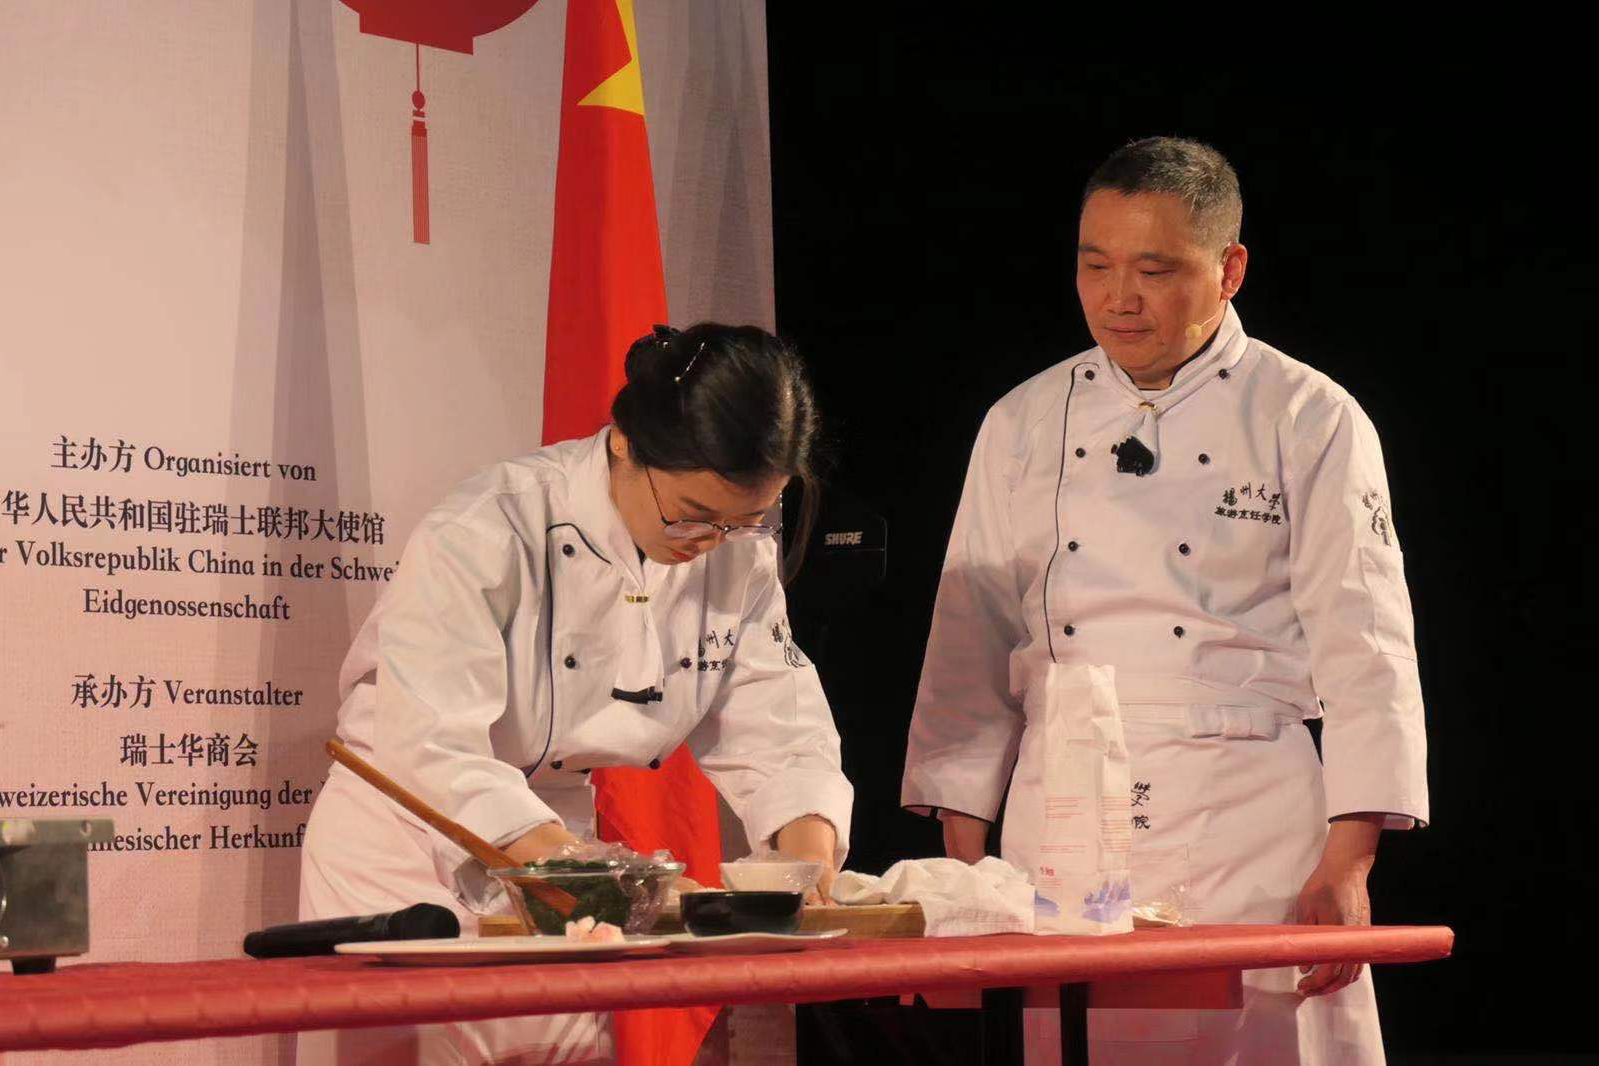 扬州大学旅游烹饪学院的专业导师表演厨艺